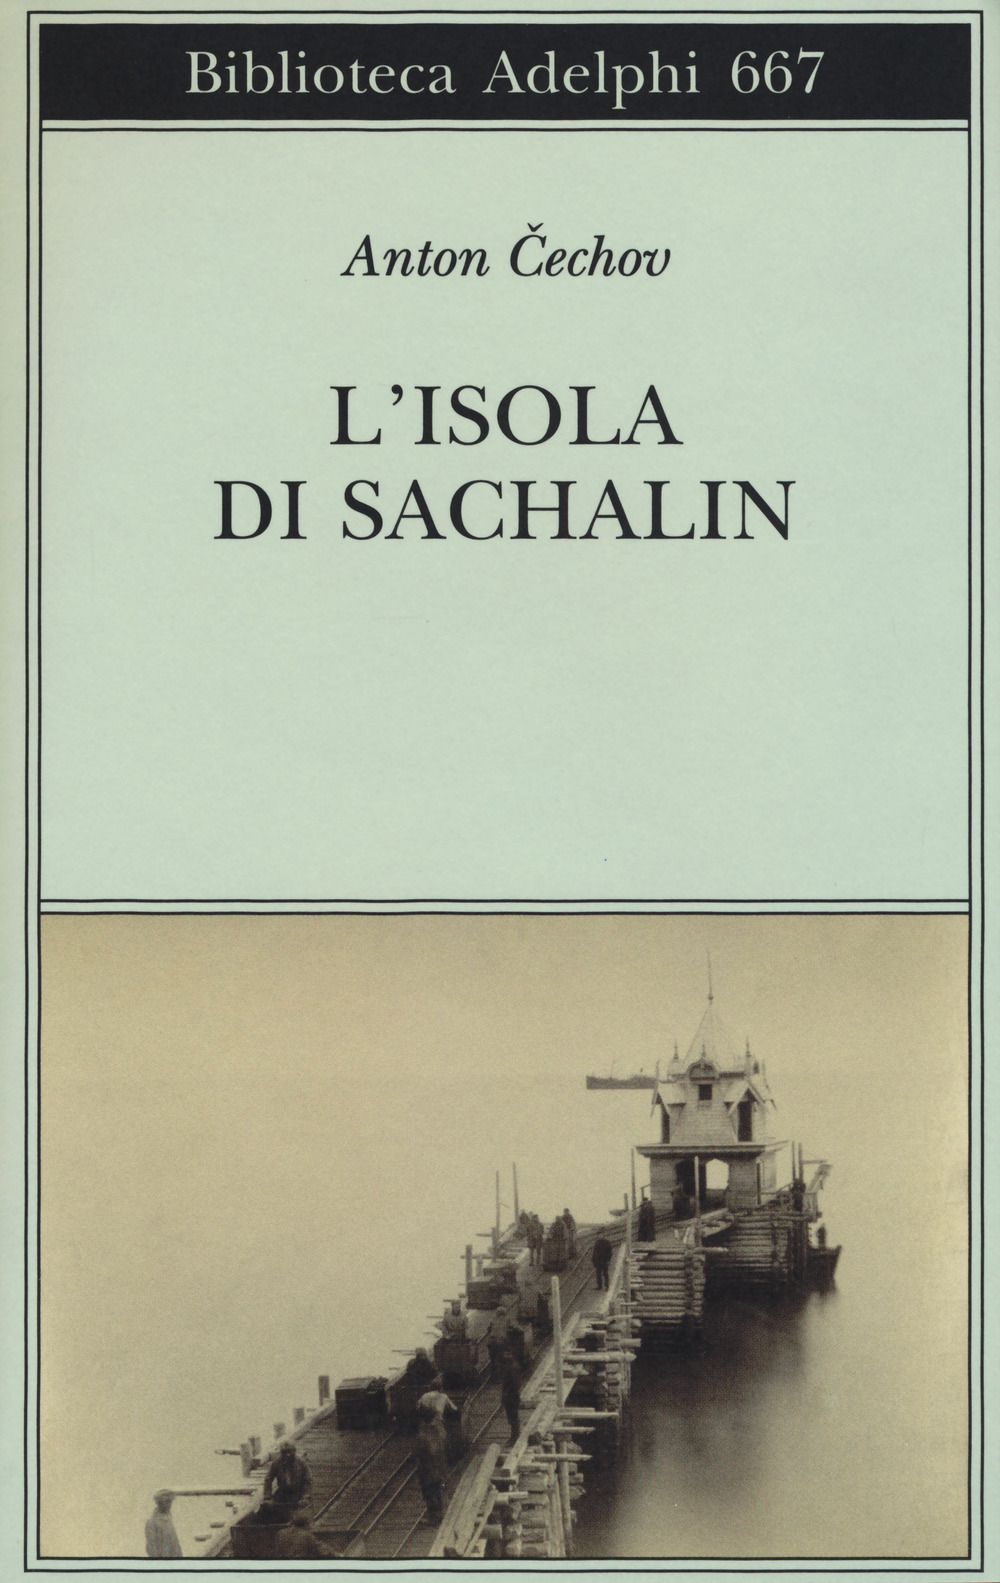 Libri Anton Cechov - L'Isola Di Sachalin NUOVO SIGILLATO, EDIZIONE DEL 15/06/2017 SUBITO DISPONIBILE